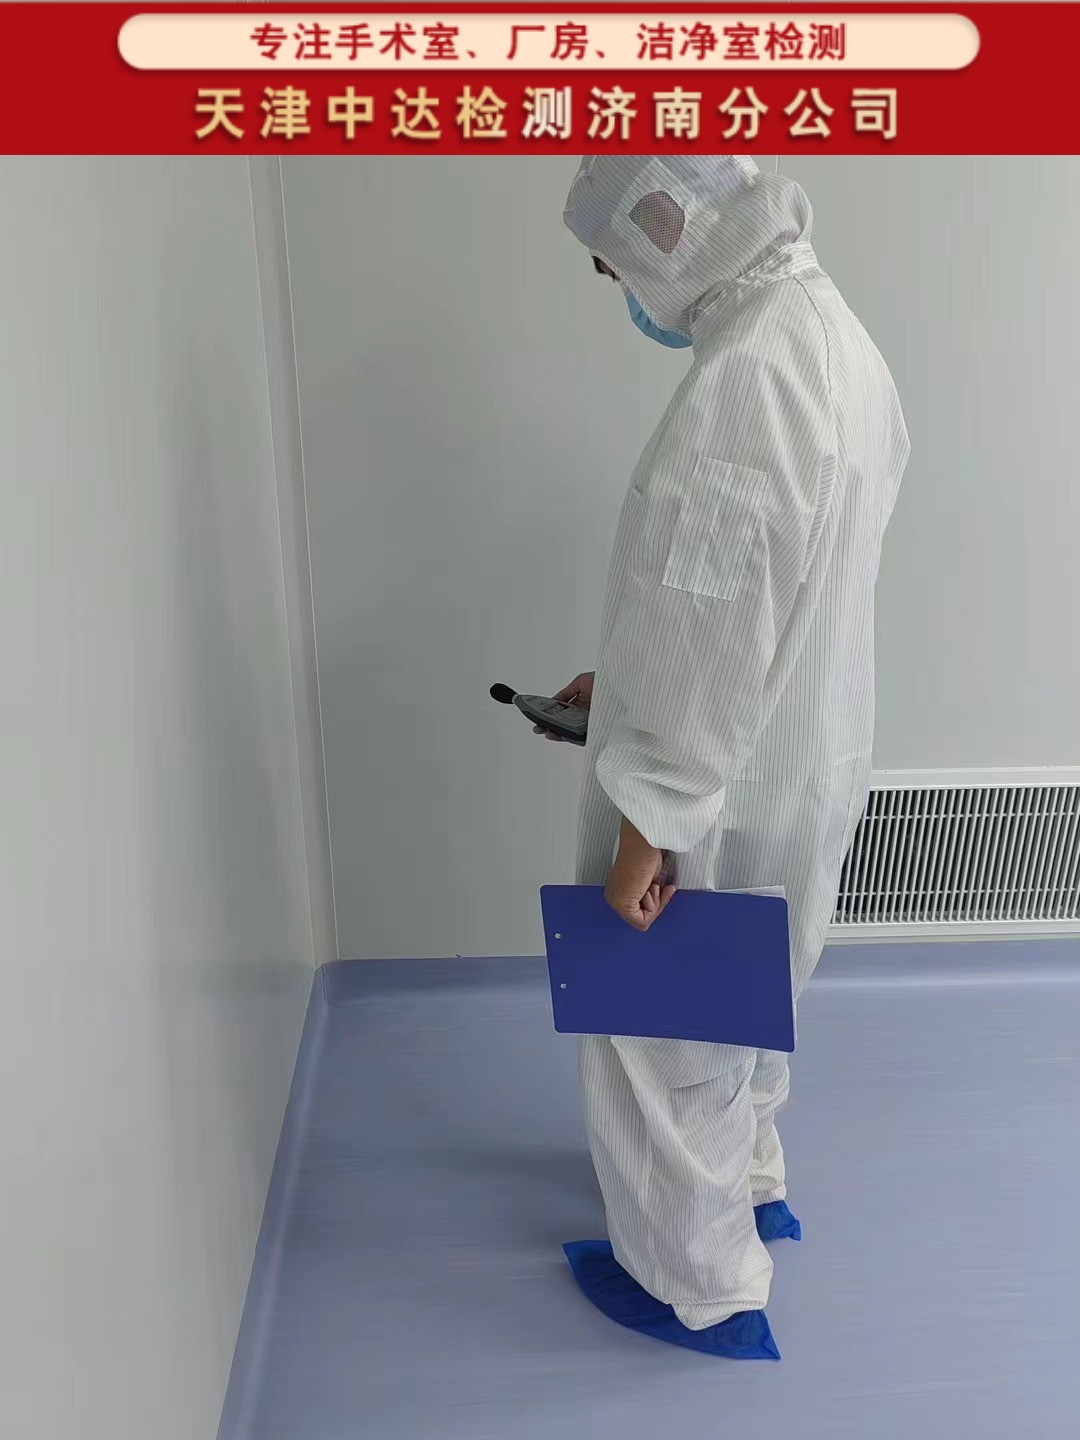 青岛市南区千级手术室净化检测内容和方法-天津中达检测济南分公司